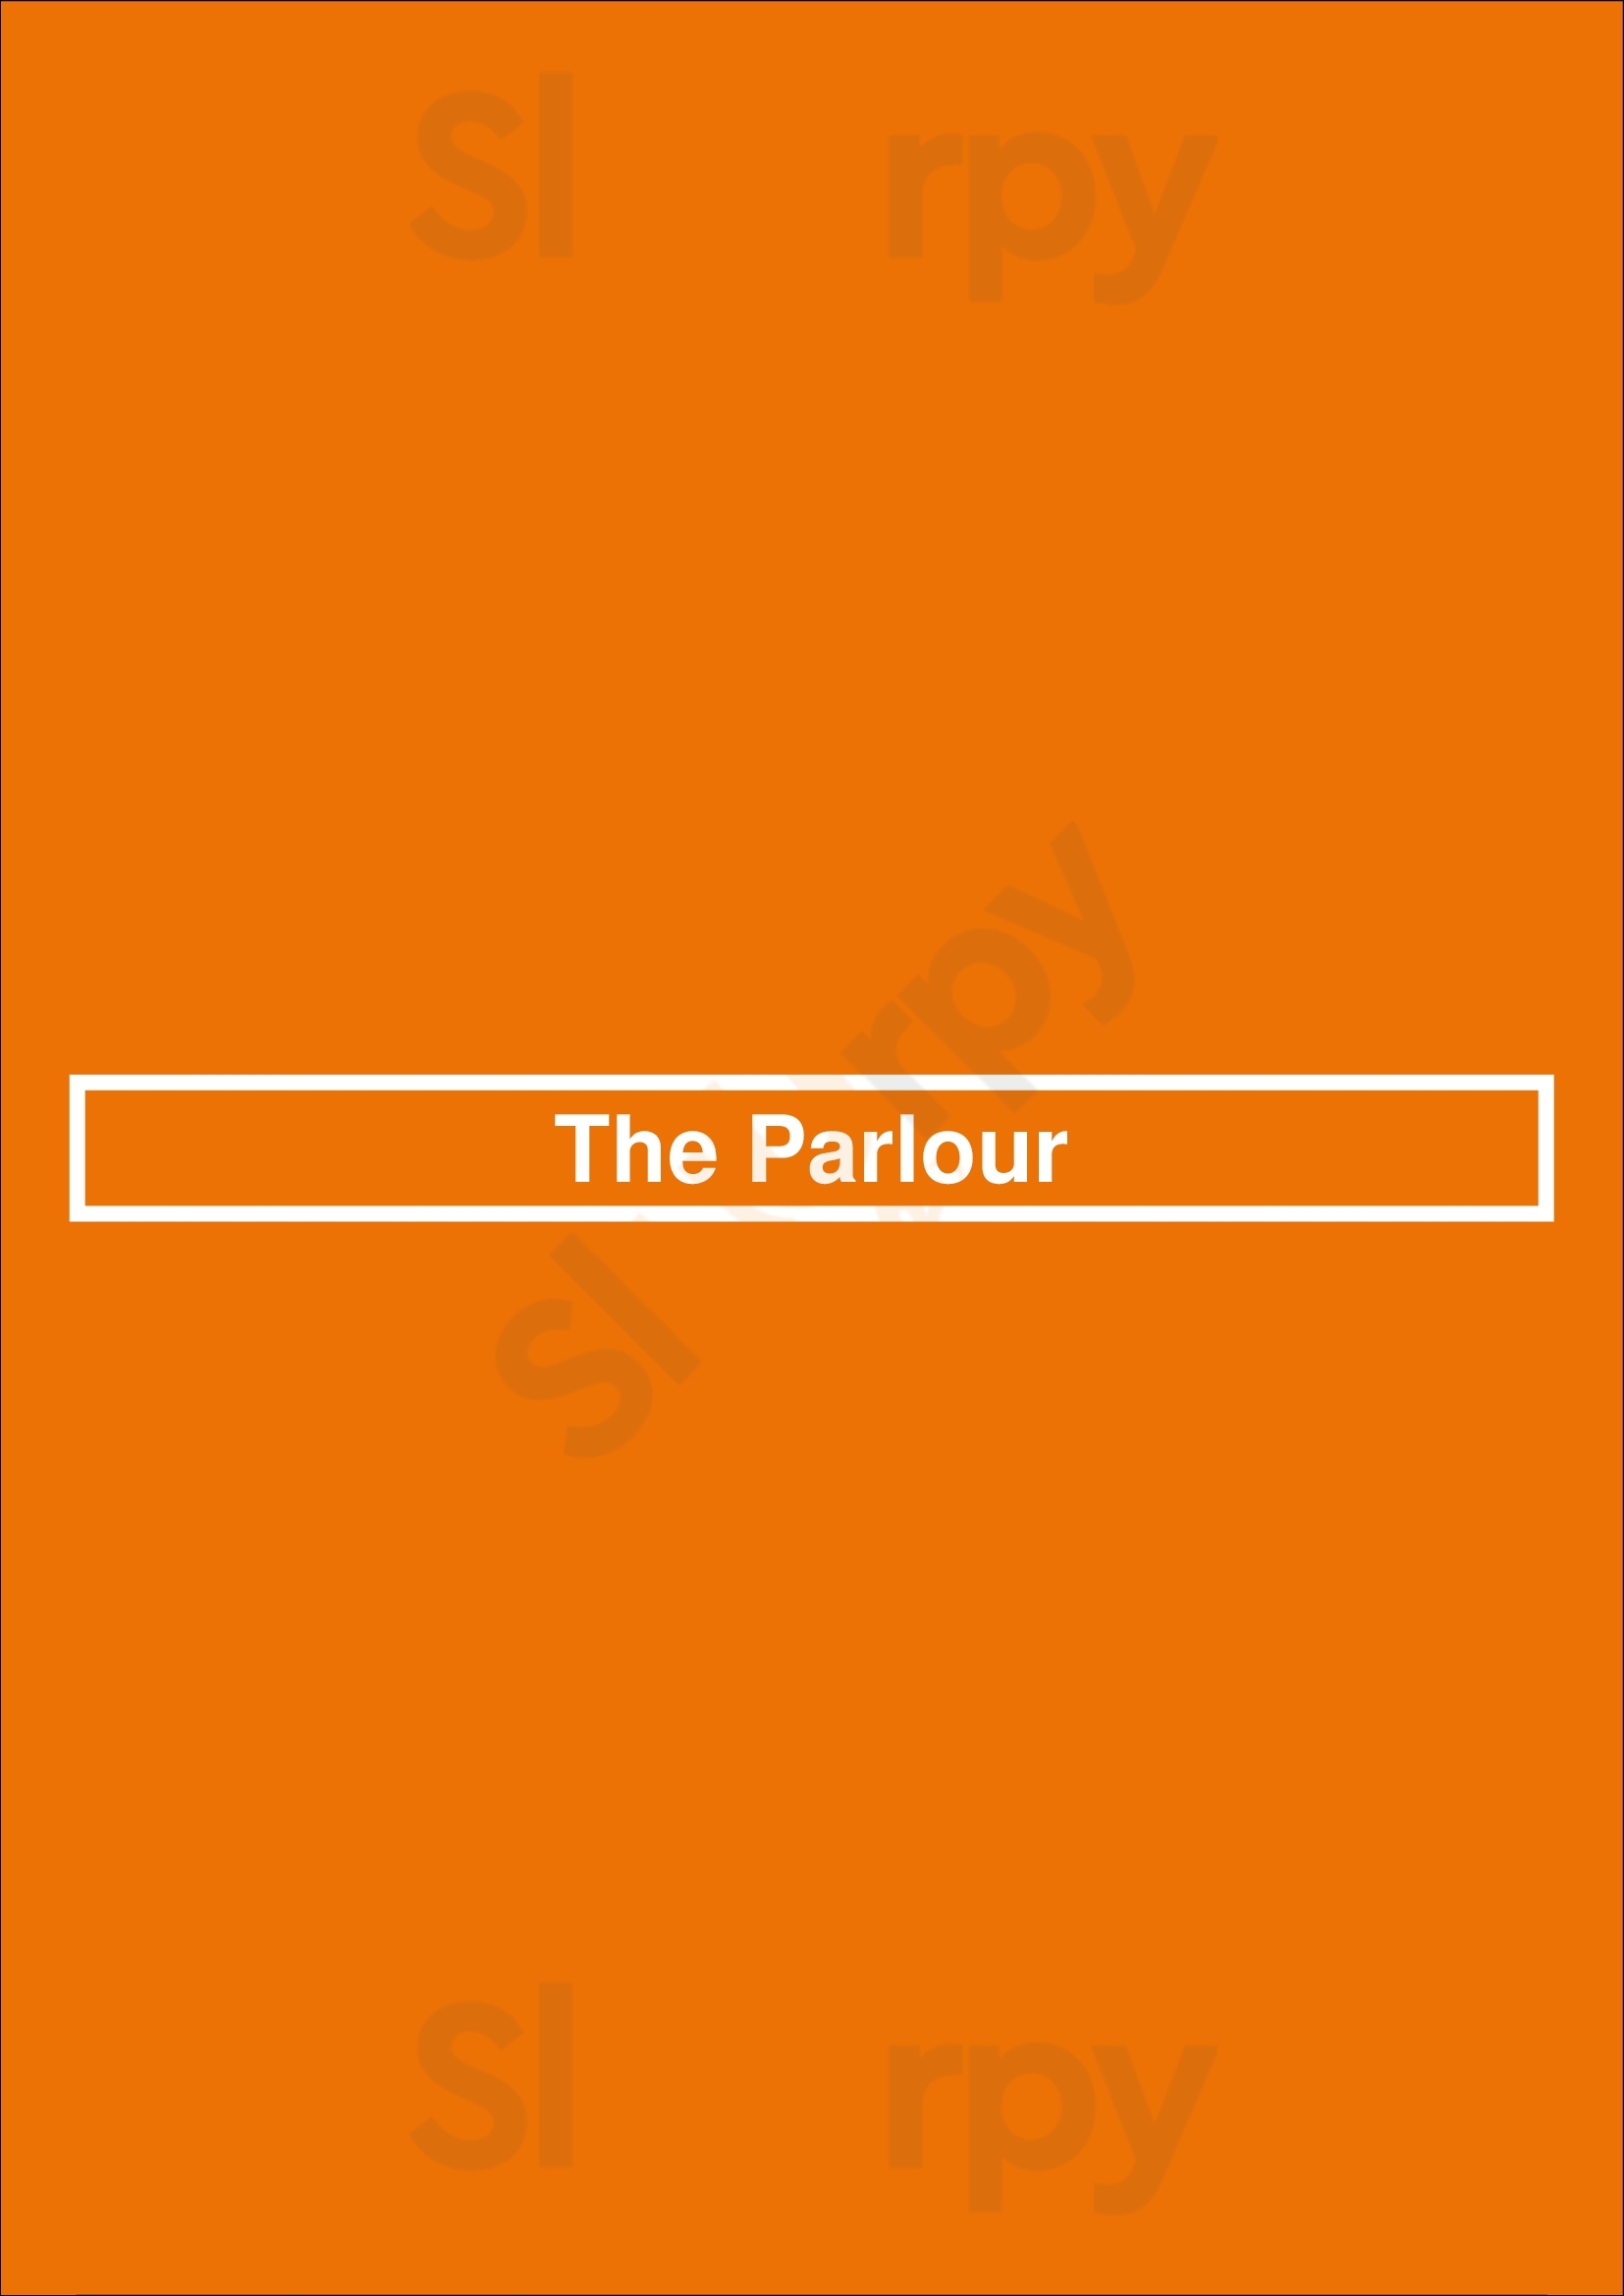 The Parlour Vancouver Menu - 1